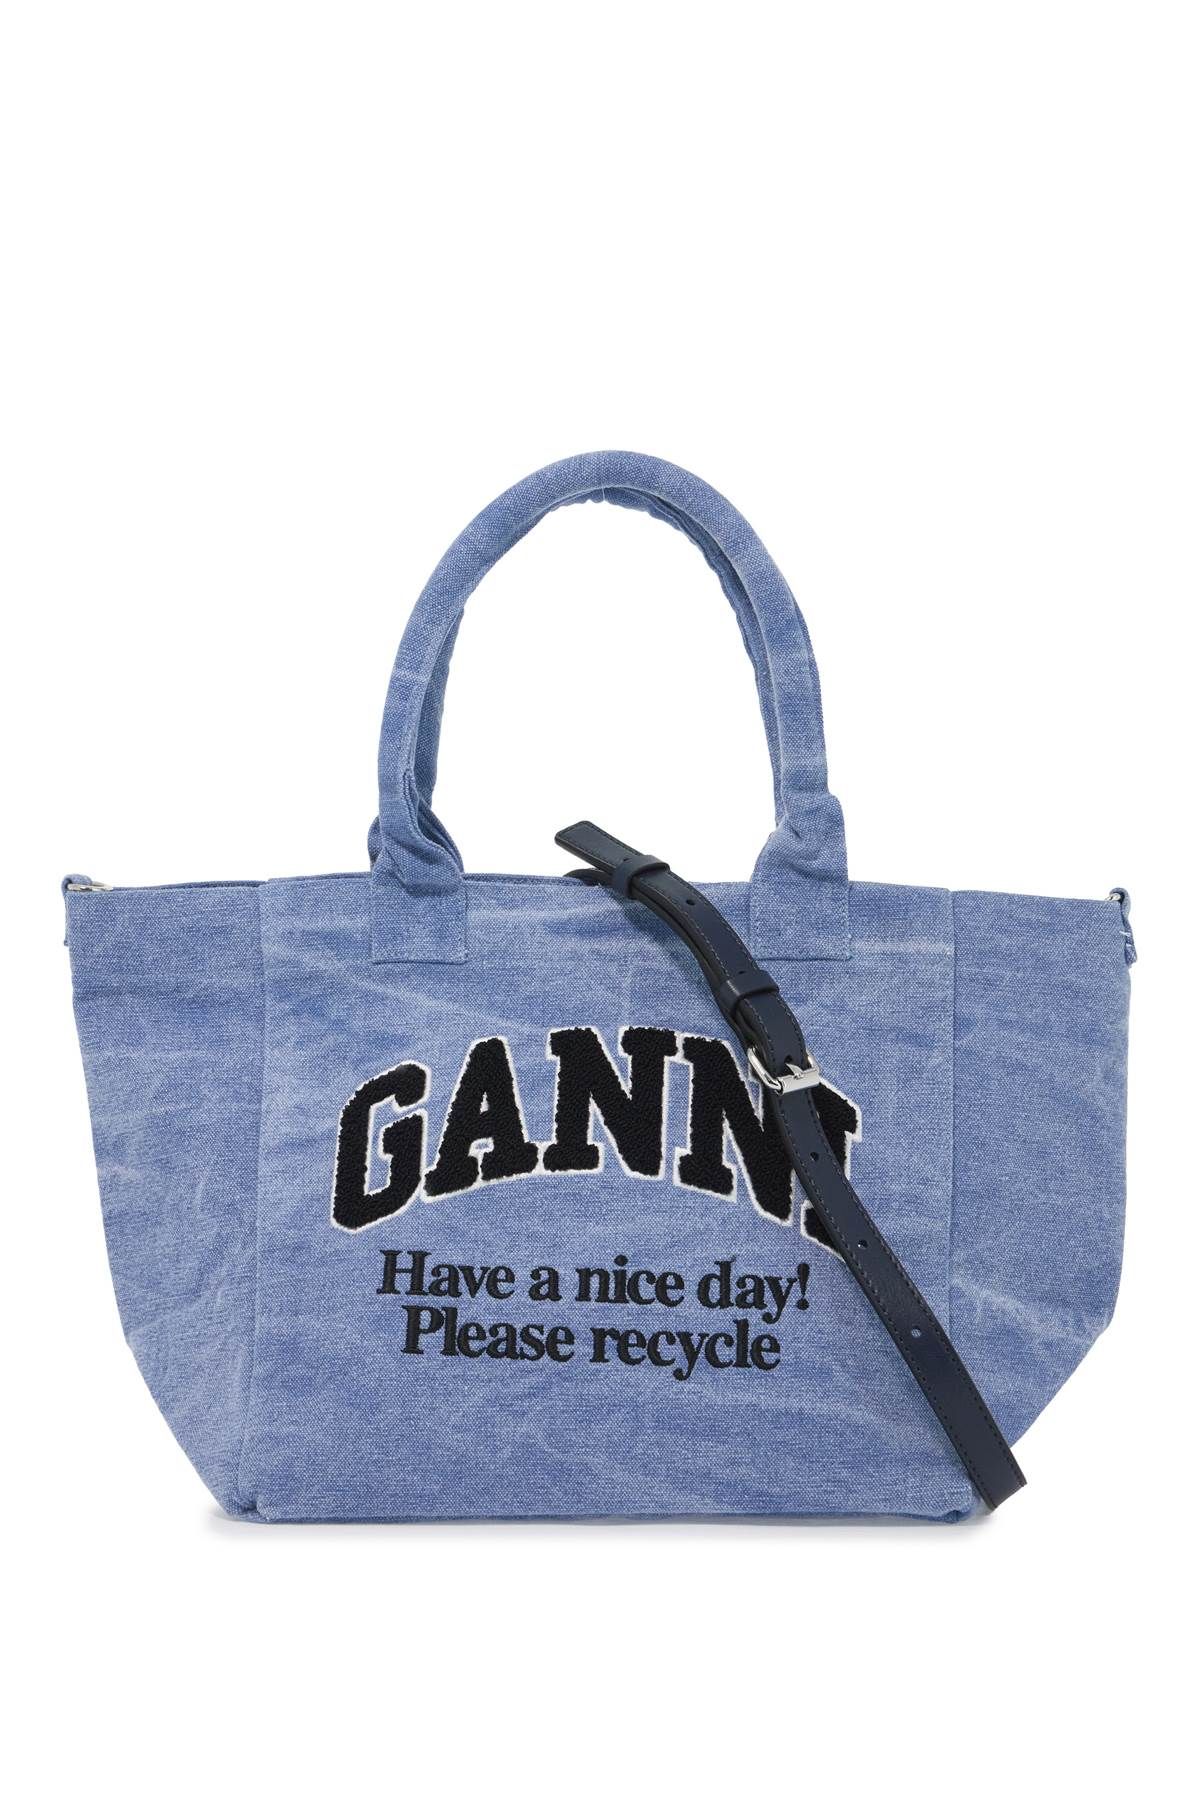 Ganni GANNI sponge logo tote bag with nine words